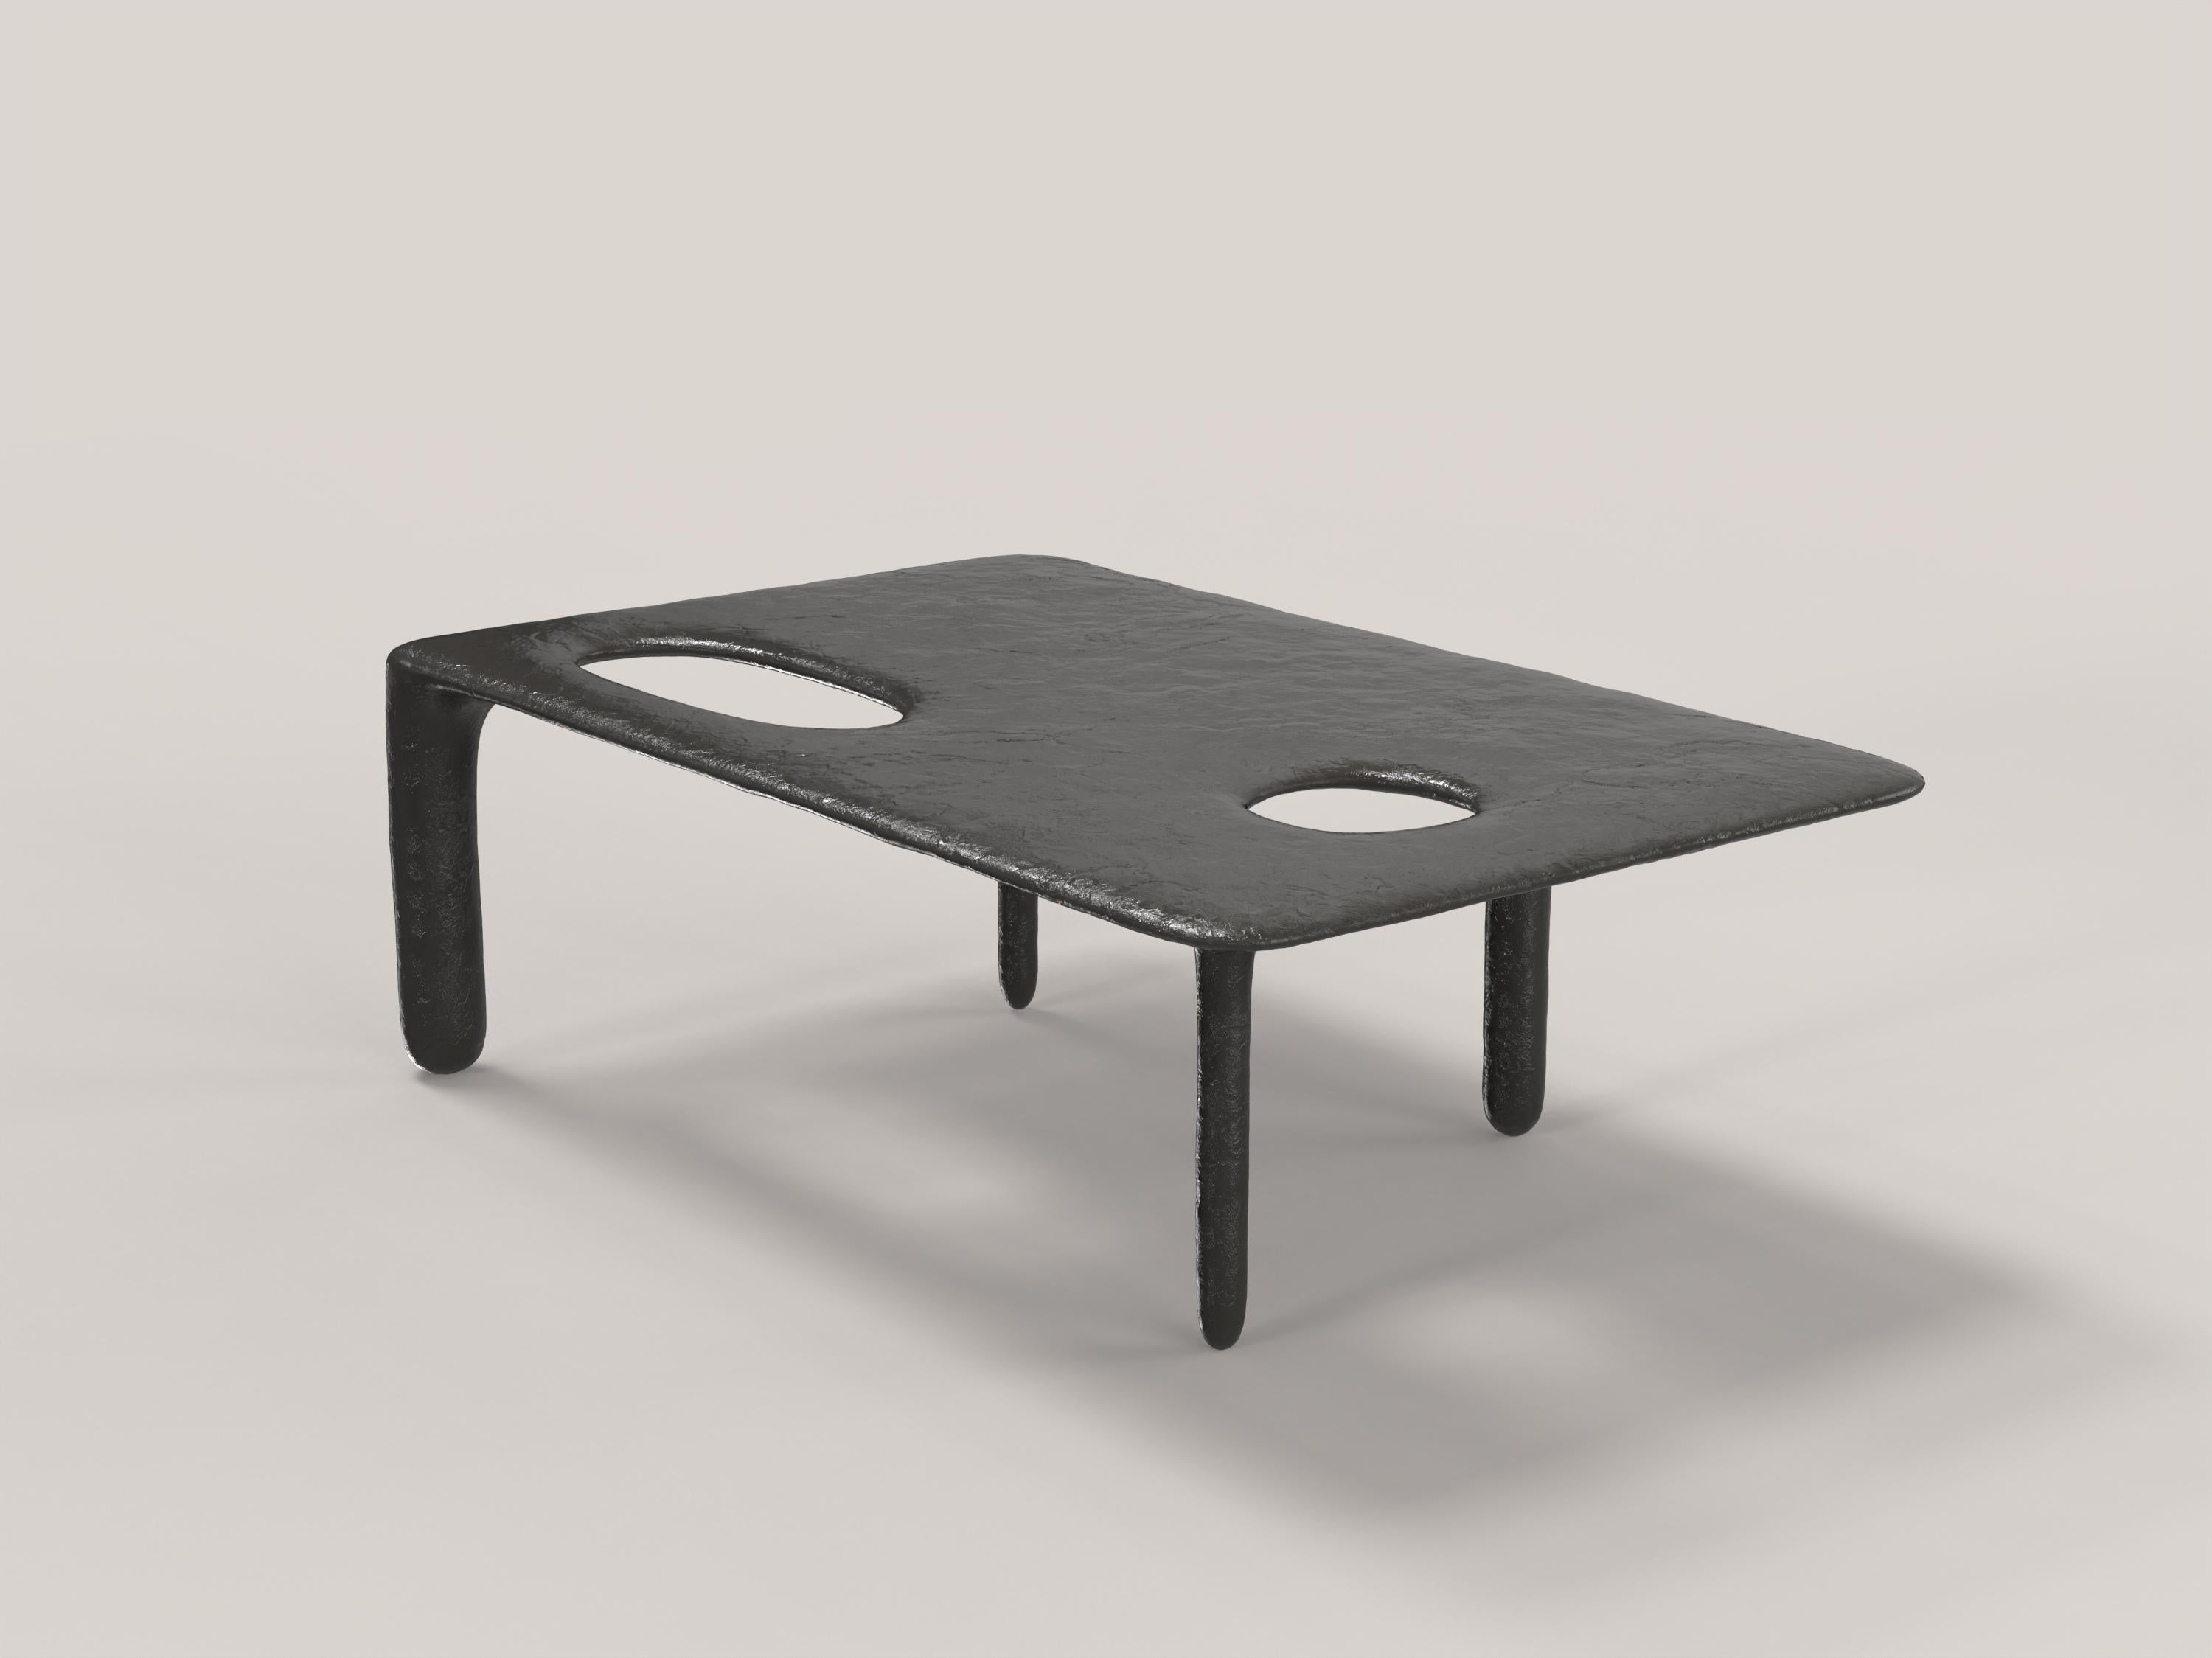 Limited Edition Bronze Table, Oasi V2 by Edizione Limitata For Sale 2